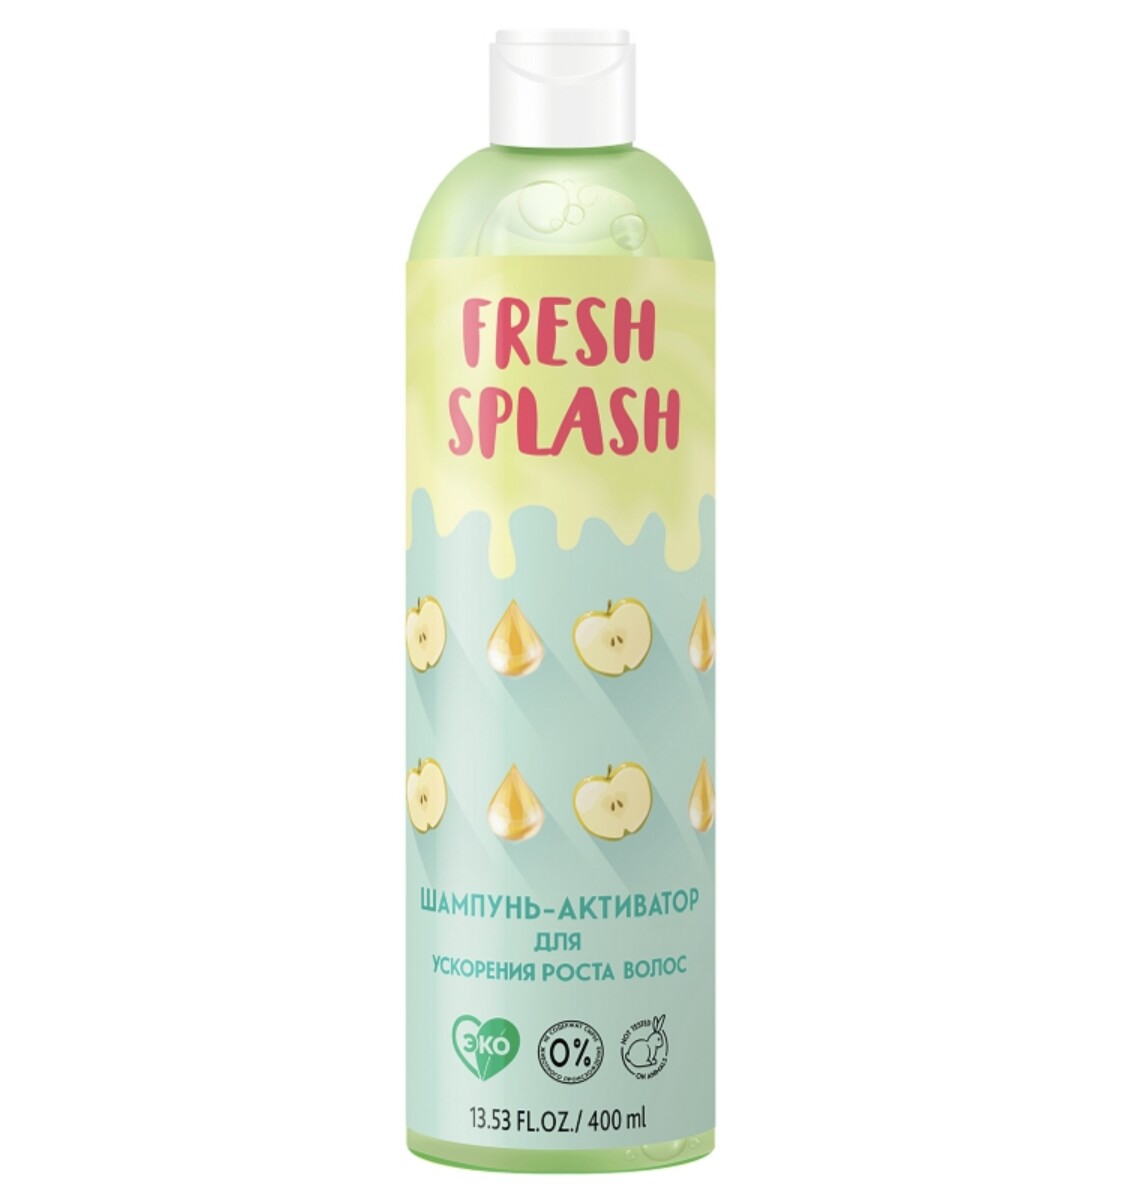 Fresh splash шампунь-активатор для ускорения роста волос, 400 мл сухой шампунь la grase fresh look 200 мл